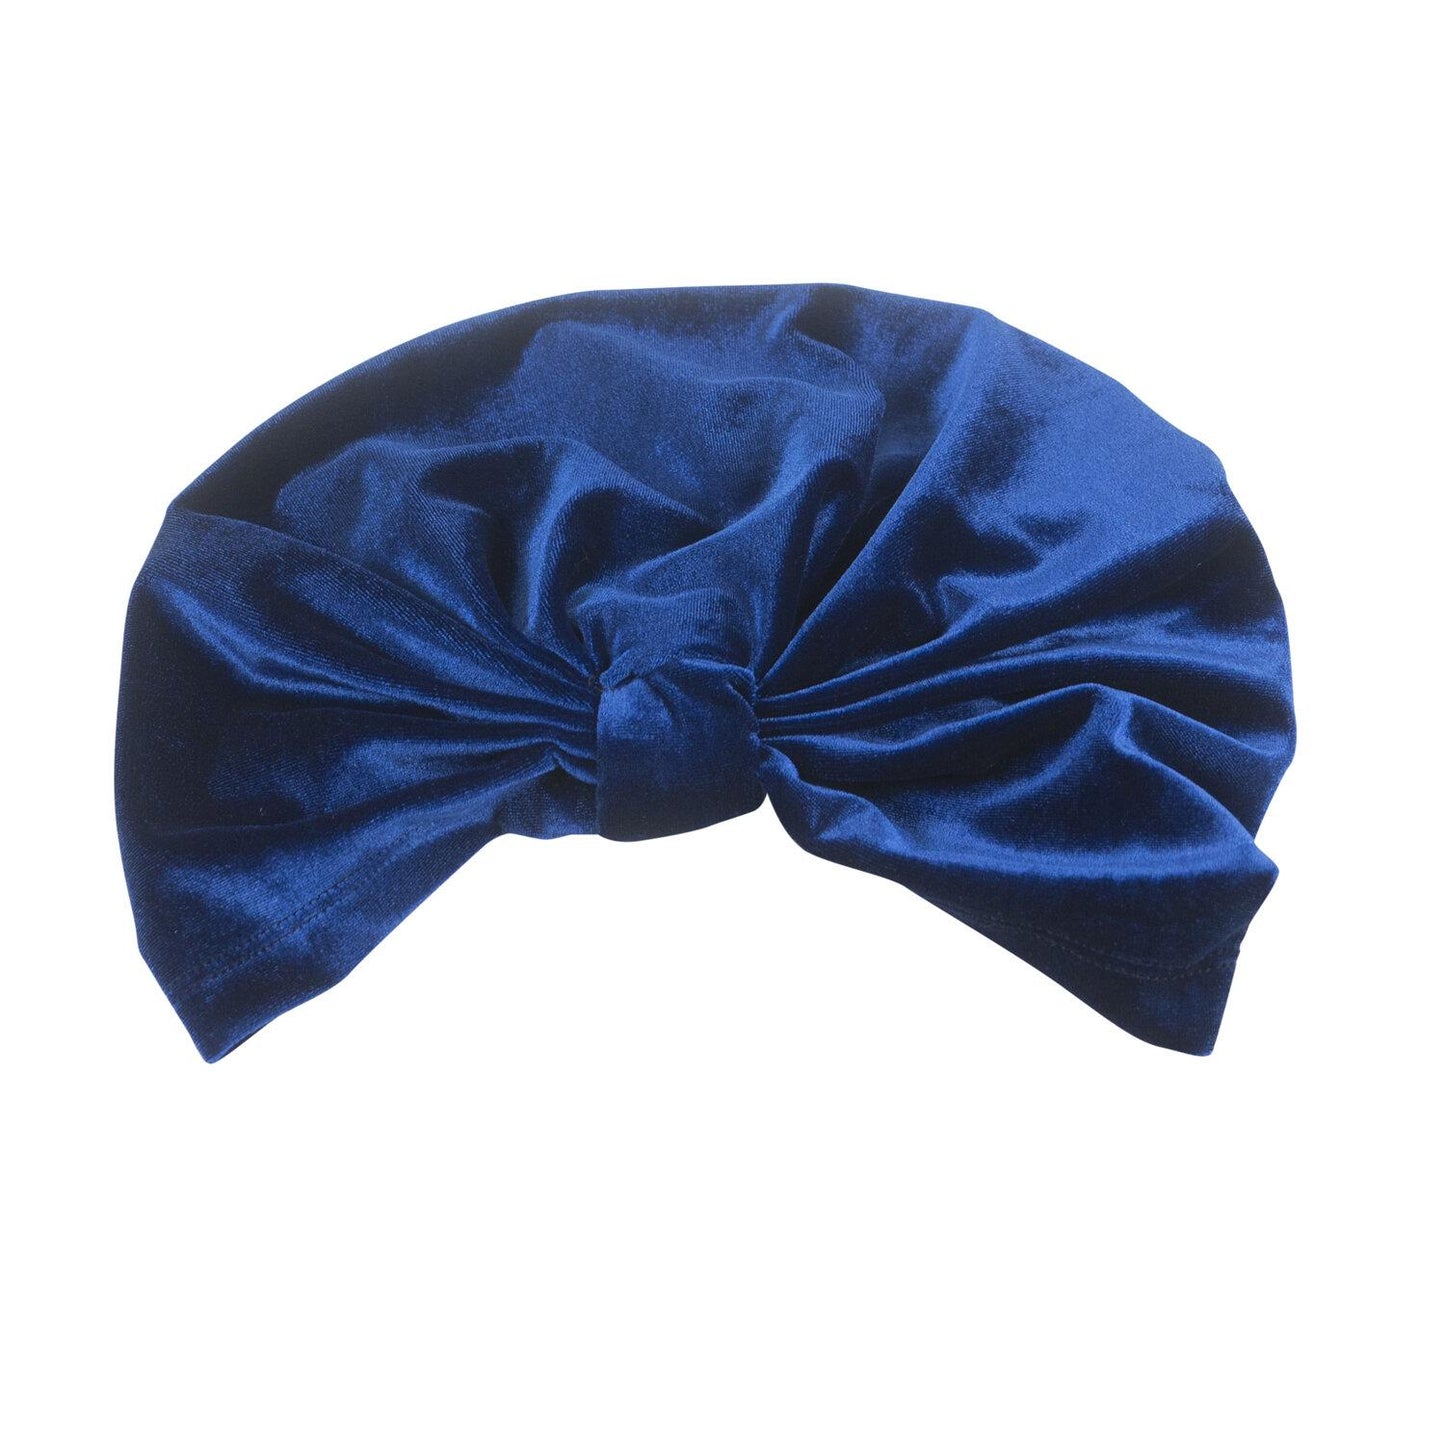 jennafer grace royal blue velvet turban beanie hat retro 1920s flapper chic vintage boho bohemian hippie romantic whimsical unisex handmade